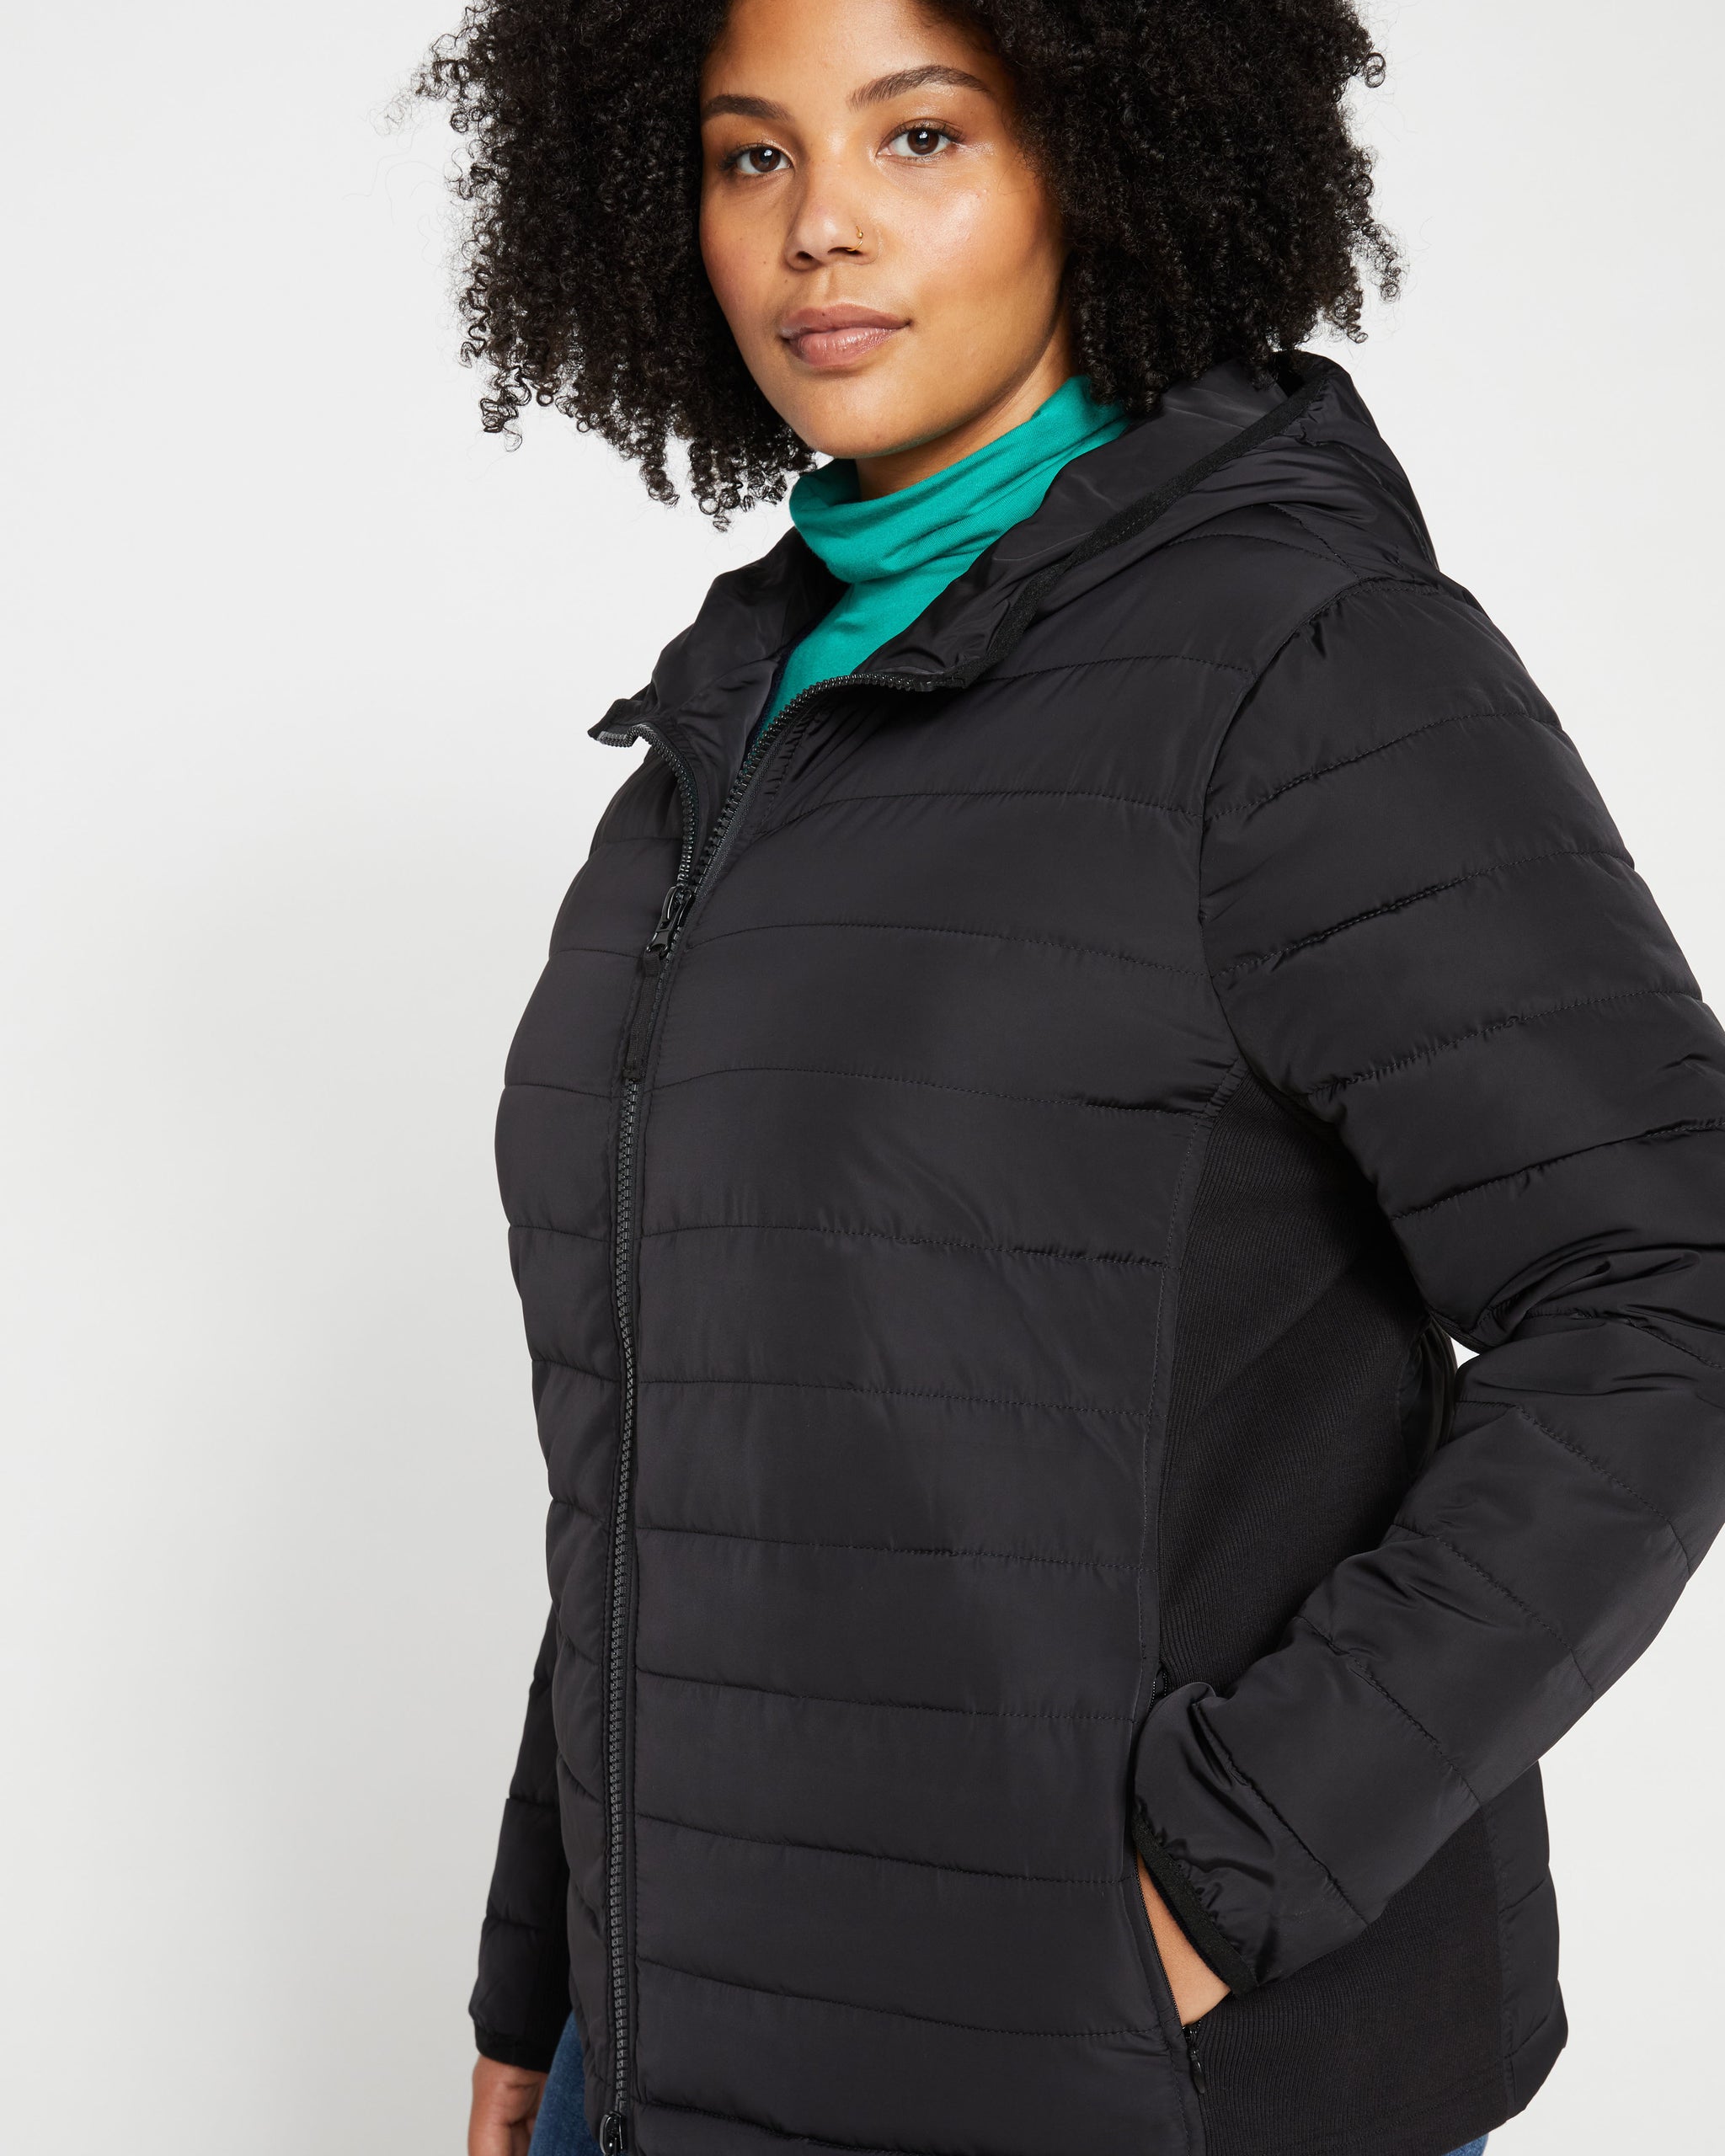 Lululemon Warp Light Packable Jacket Size 2xl Black, New **see Details**